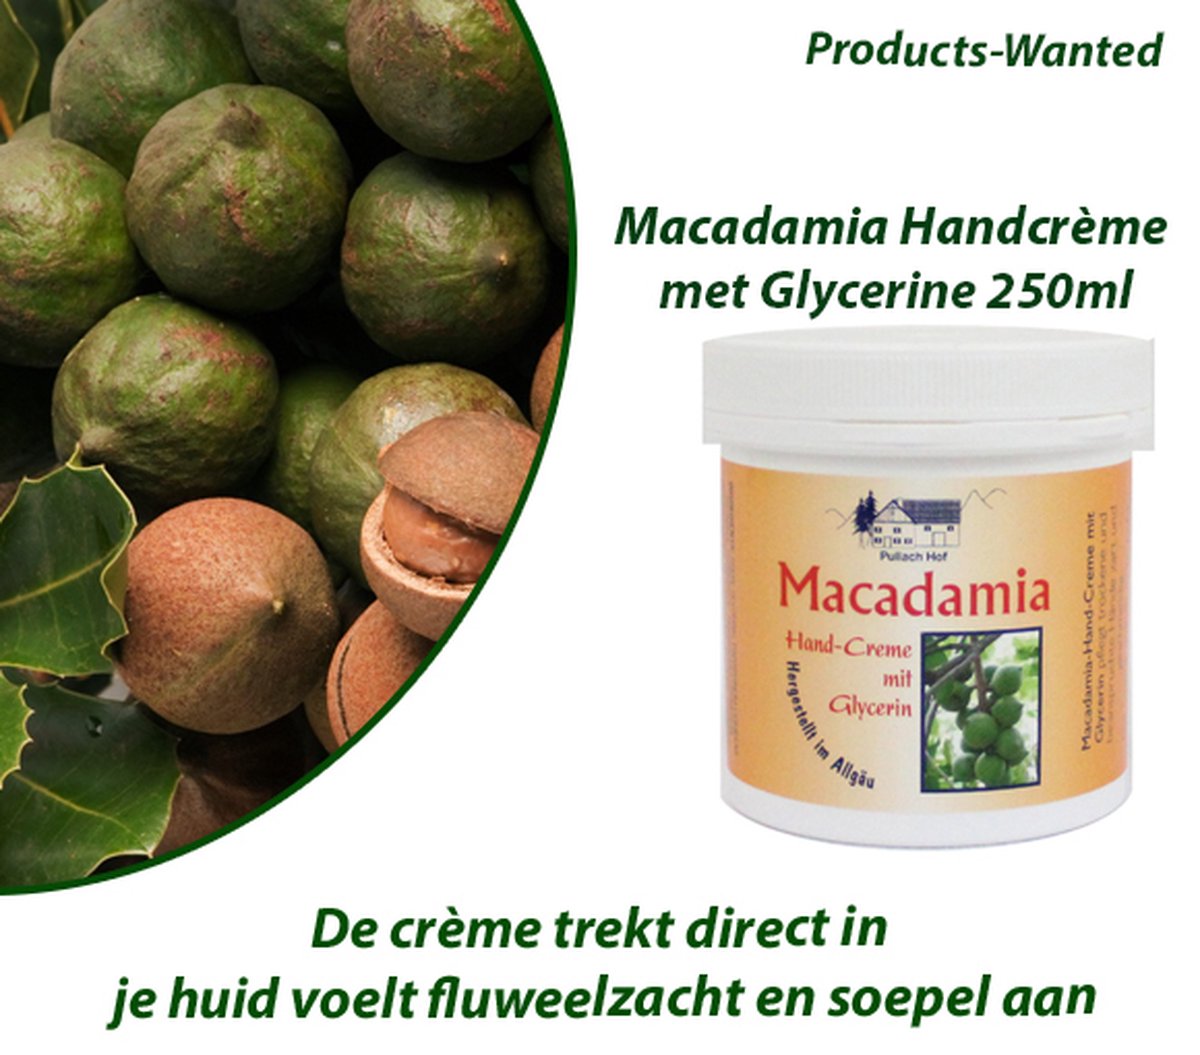 3-Potten Macadamia Handcrème met Glycerine 250ml